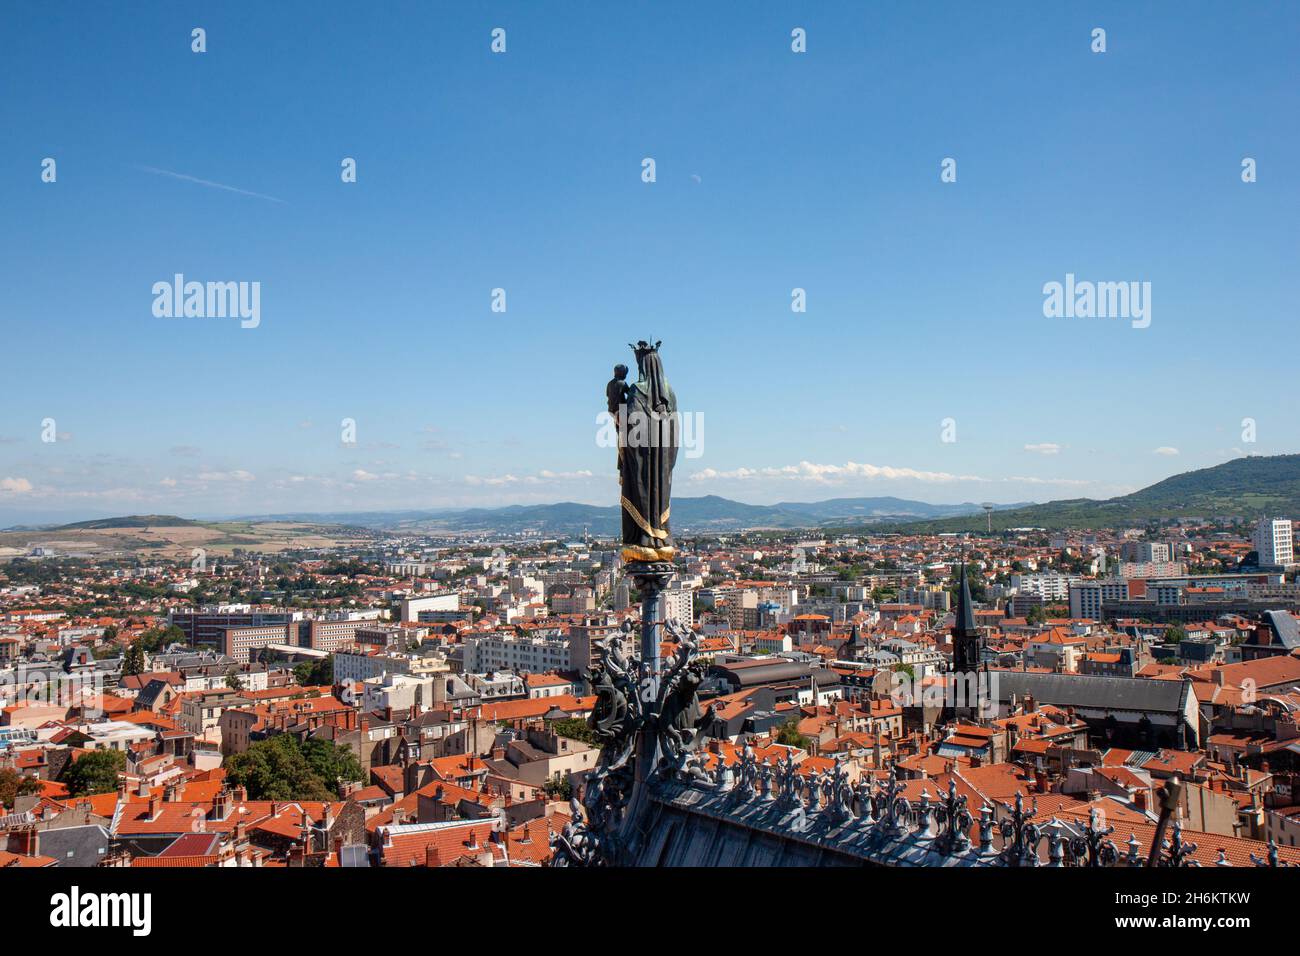 Statua e vista sulla città di Clermont-Ferrand dalla Cattedrale di Clermont-Ferrand (Notre-Dame-de-l'Assomption), Clermont-Ferrand, Francia Foto Stock